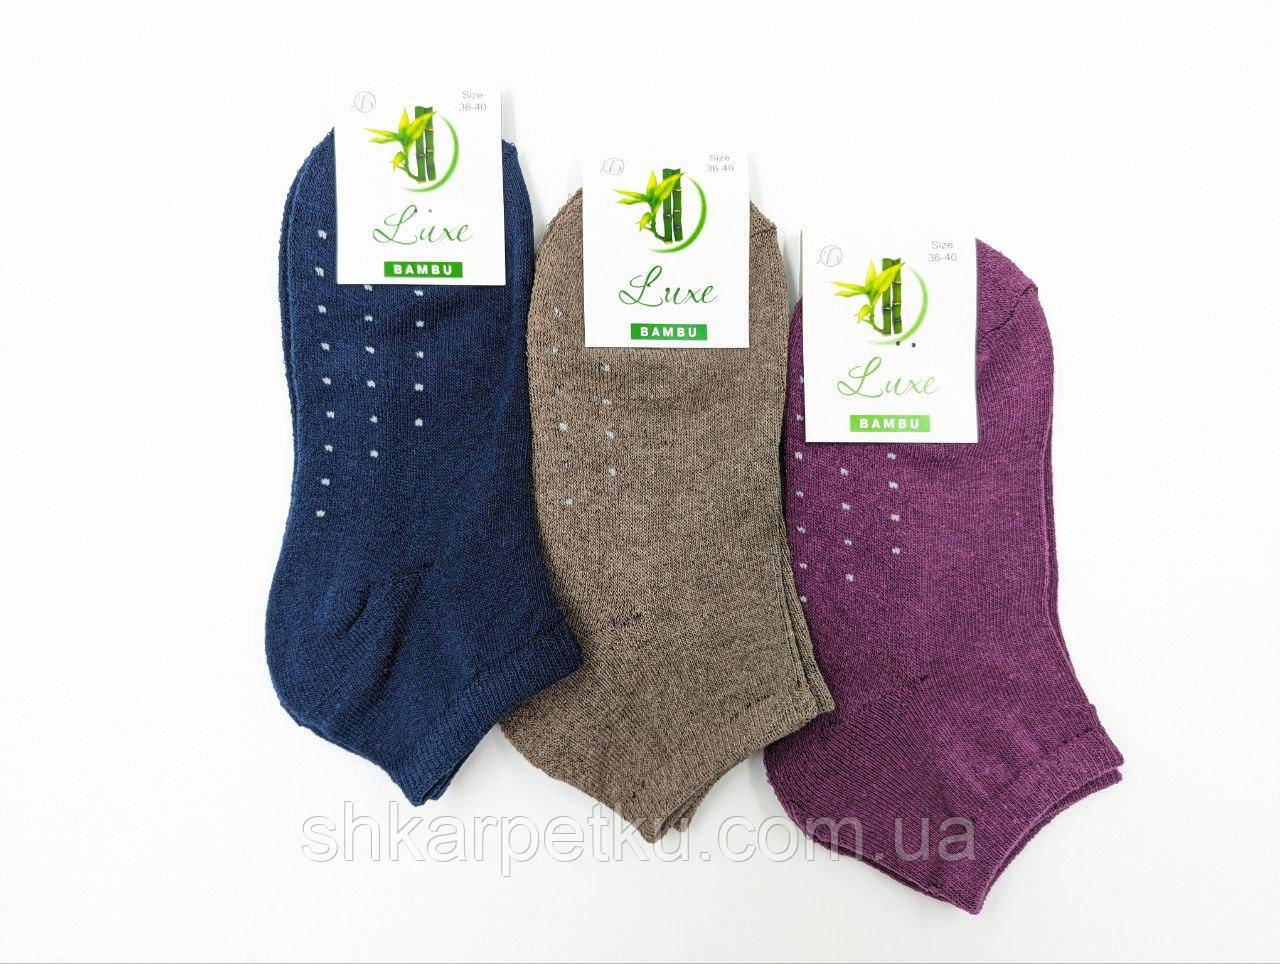 Жіночі короткі термо шкарпетки махрова ступня  Житомир Люкс 36-40 мікс кольорів 12 пар/уп